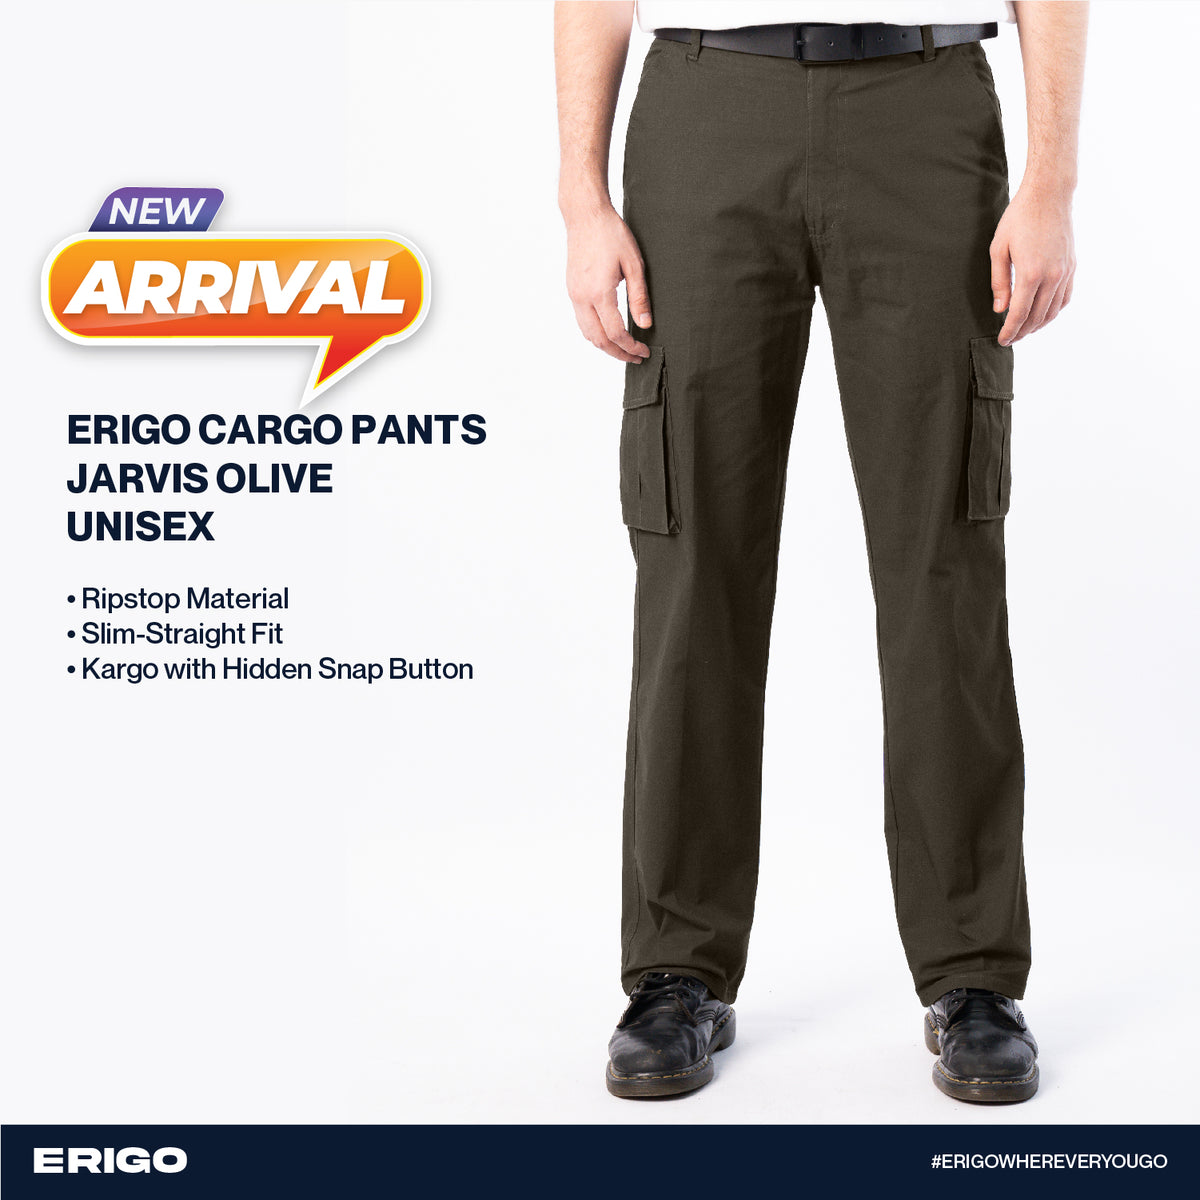 Erigo Cargo Pants Jarvis Olive Unisex